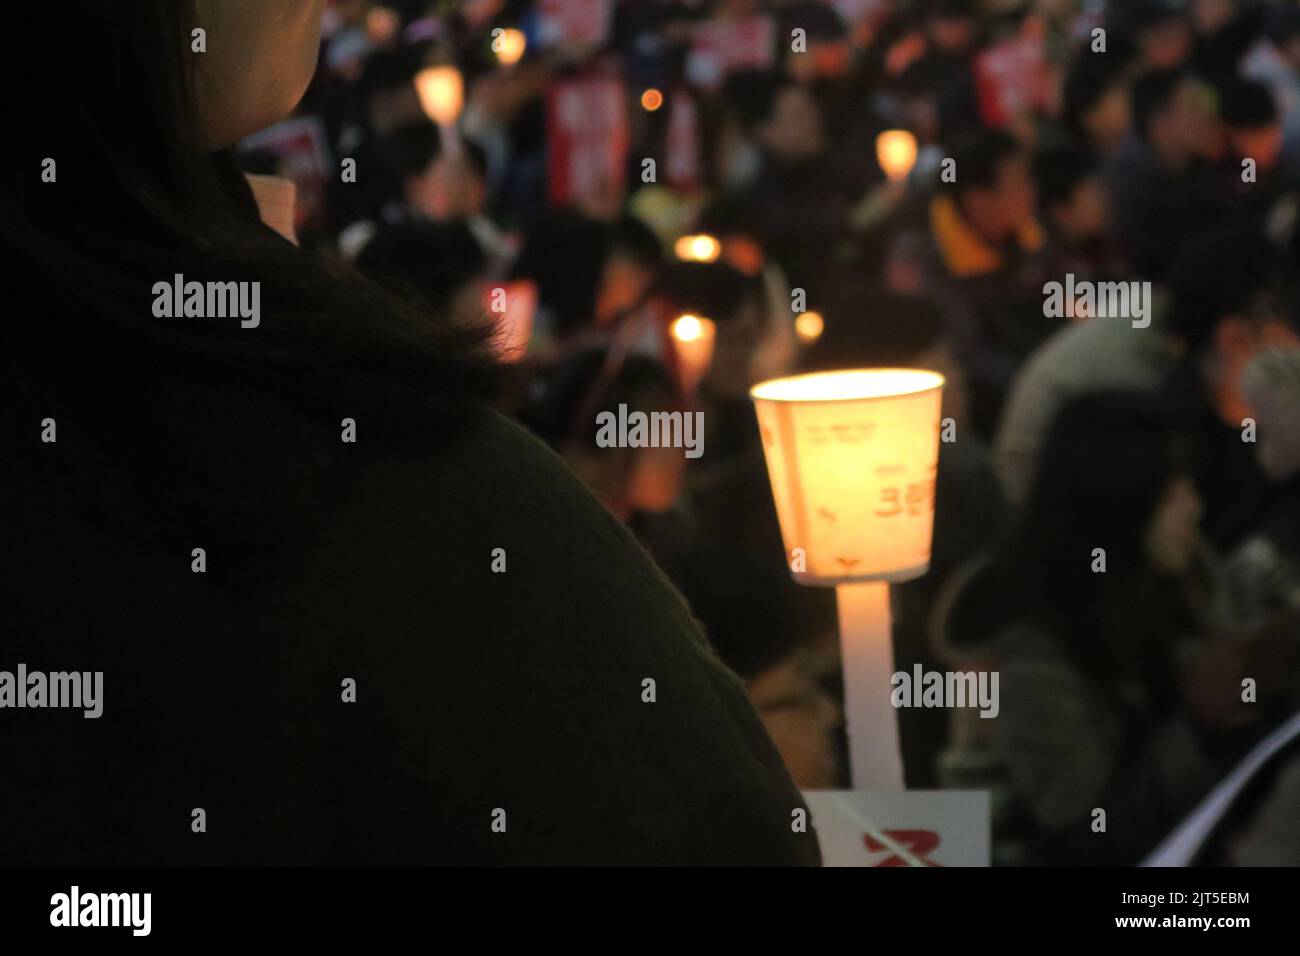 Un manifestant tient une lanterne pendant la manifestation contre l'ancien président Park Geun hye. Corée du Sud. Banque D'Images